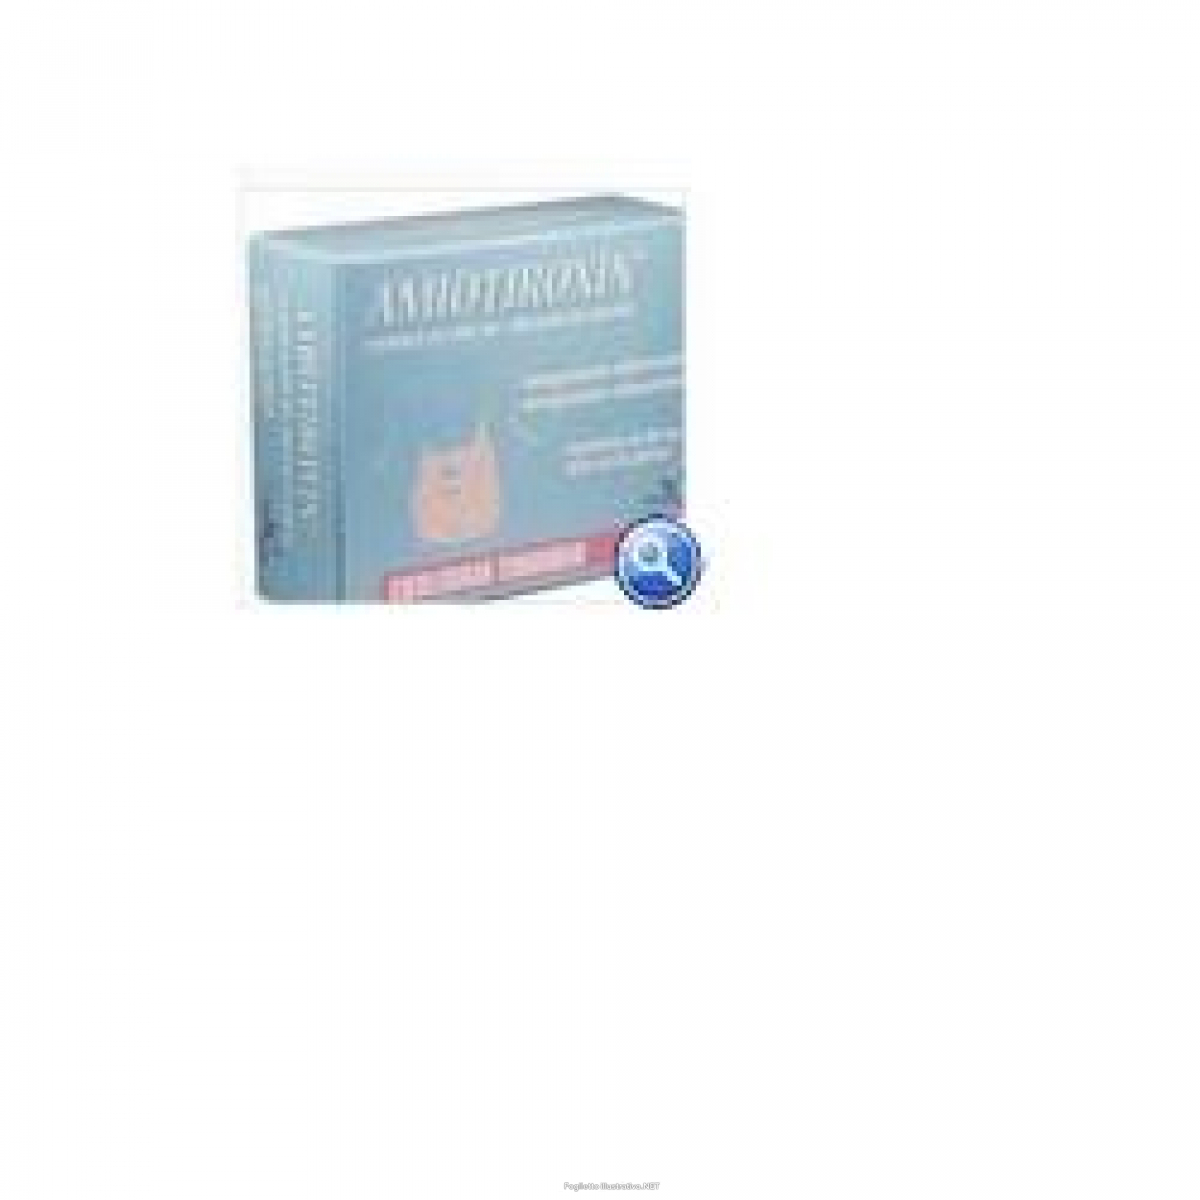 Cerca Offerte di amiotiroxin 30 capsule e acquista online